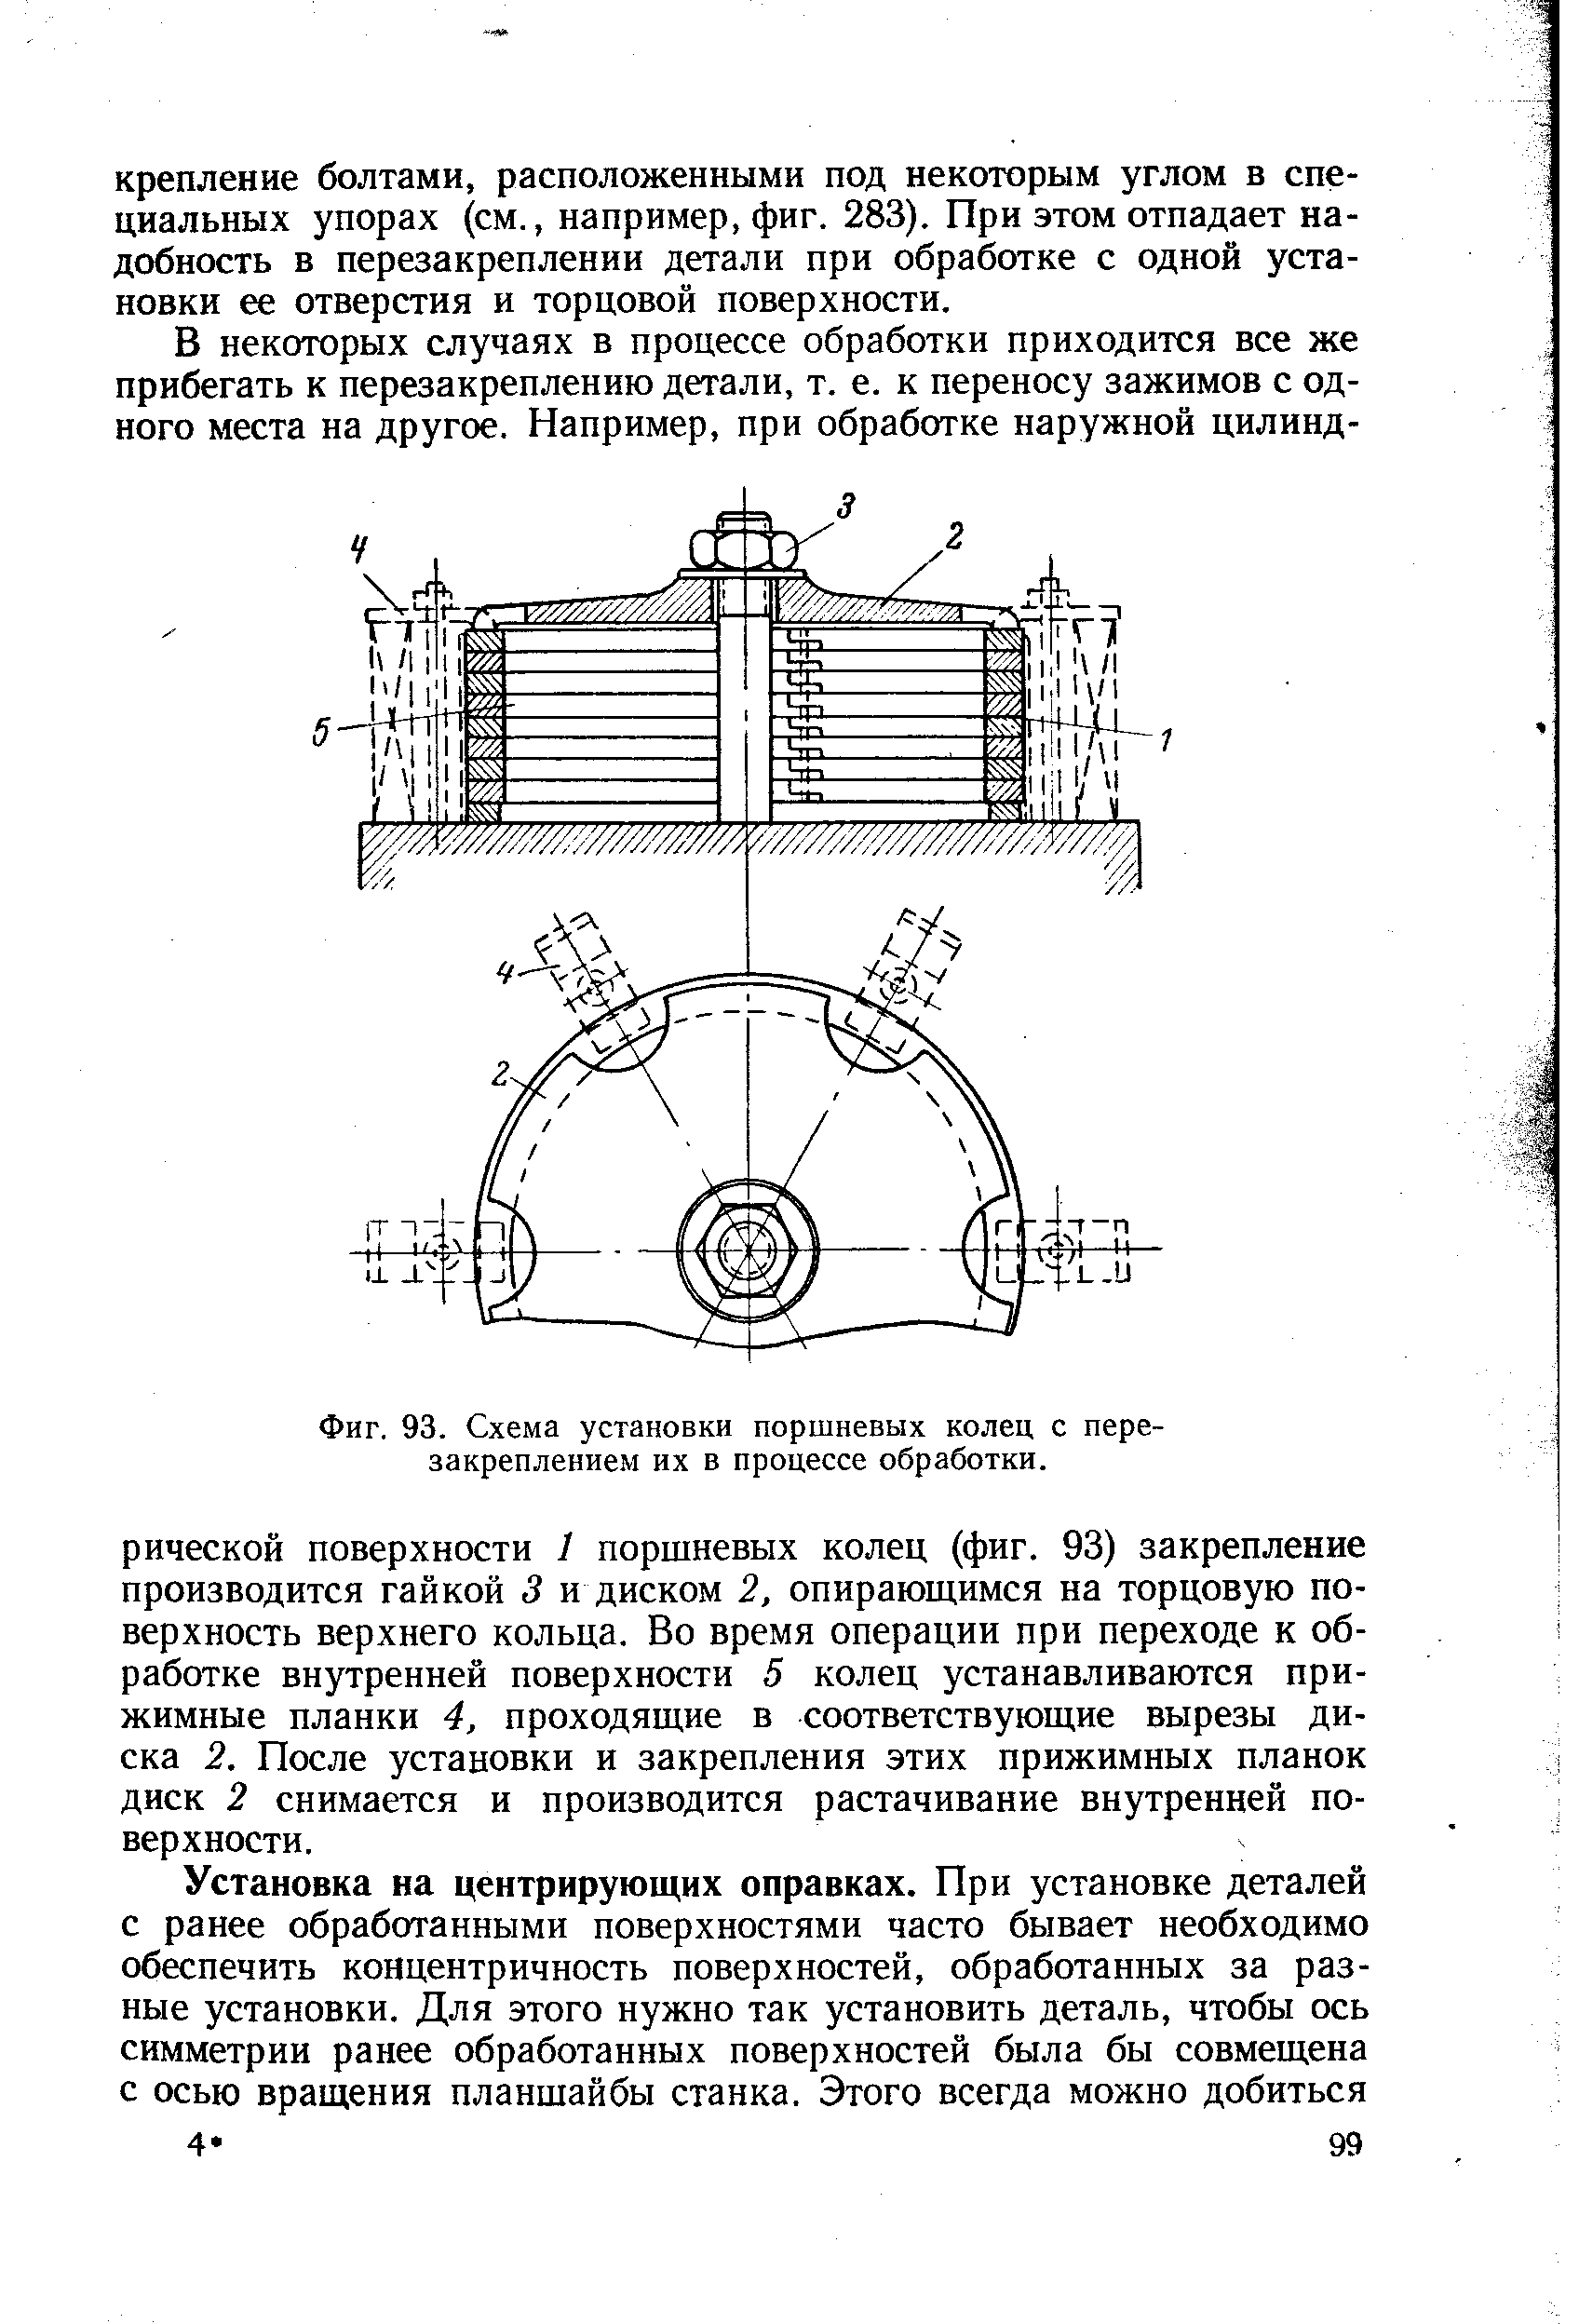 Схема установки колец на поршень